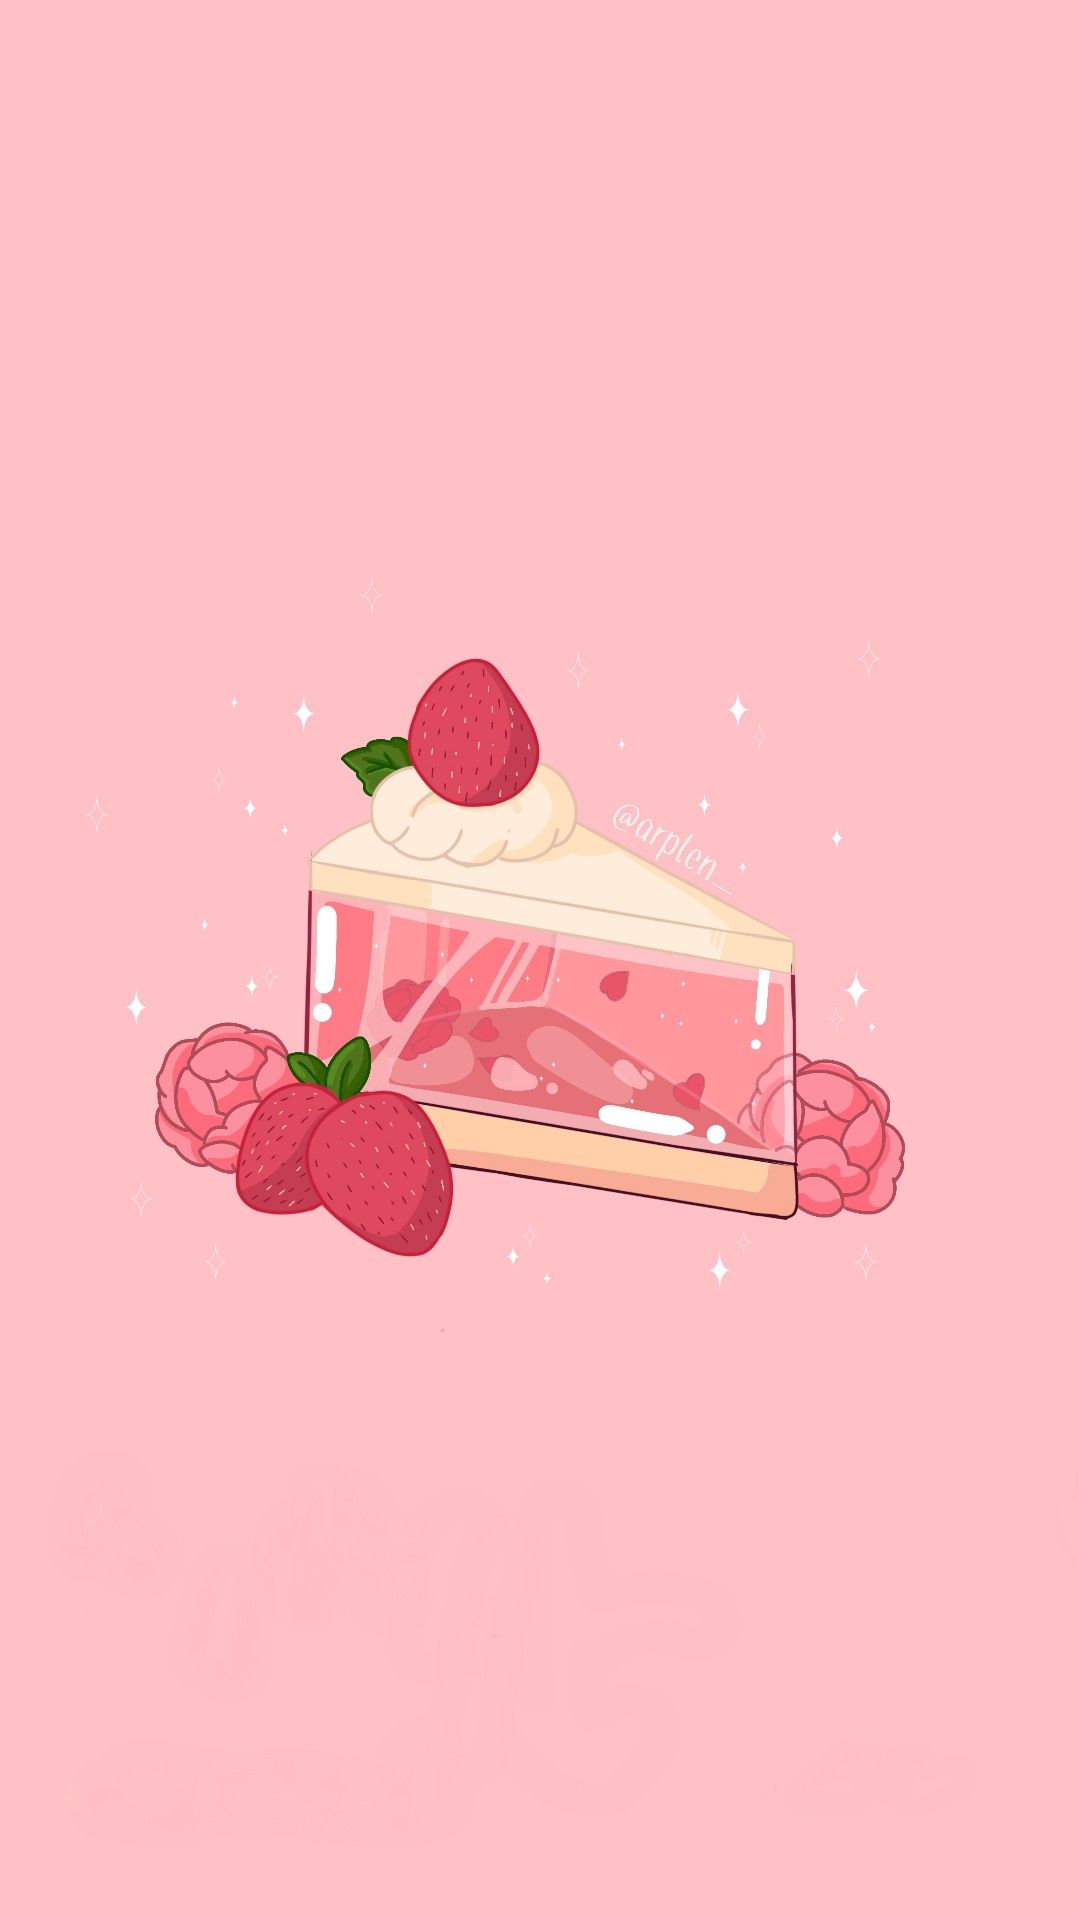 Strawberry cake. Papier basteln ideen, Hintergrundbilder, Roter hintergrund